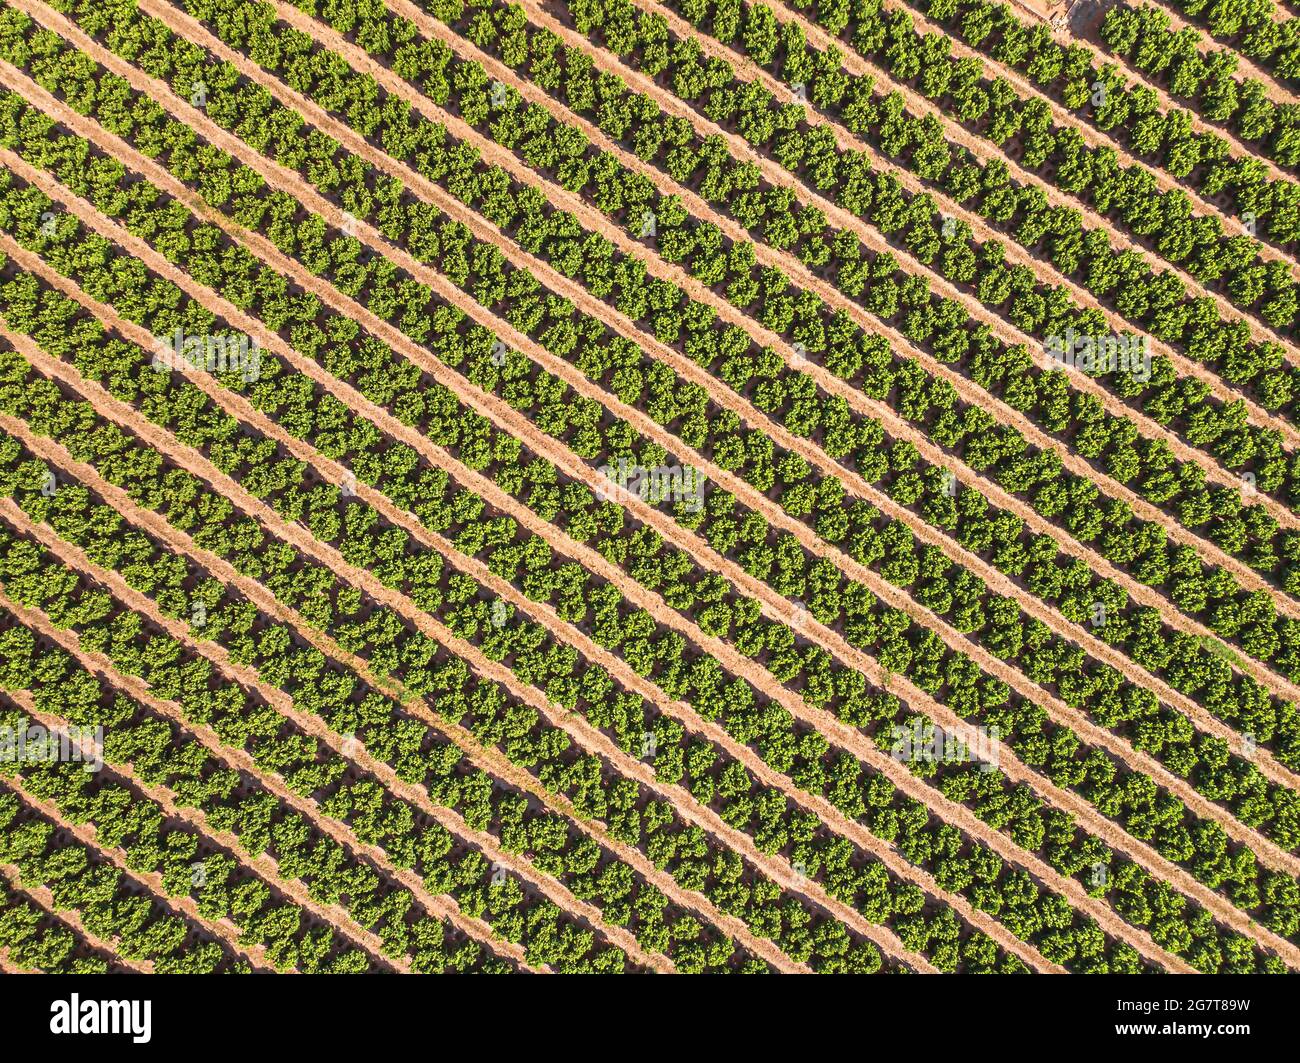 Paesaggio agricolo. Campo coltivato con alberi da frutto in file Foto Stock